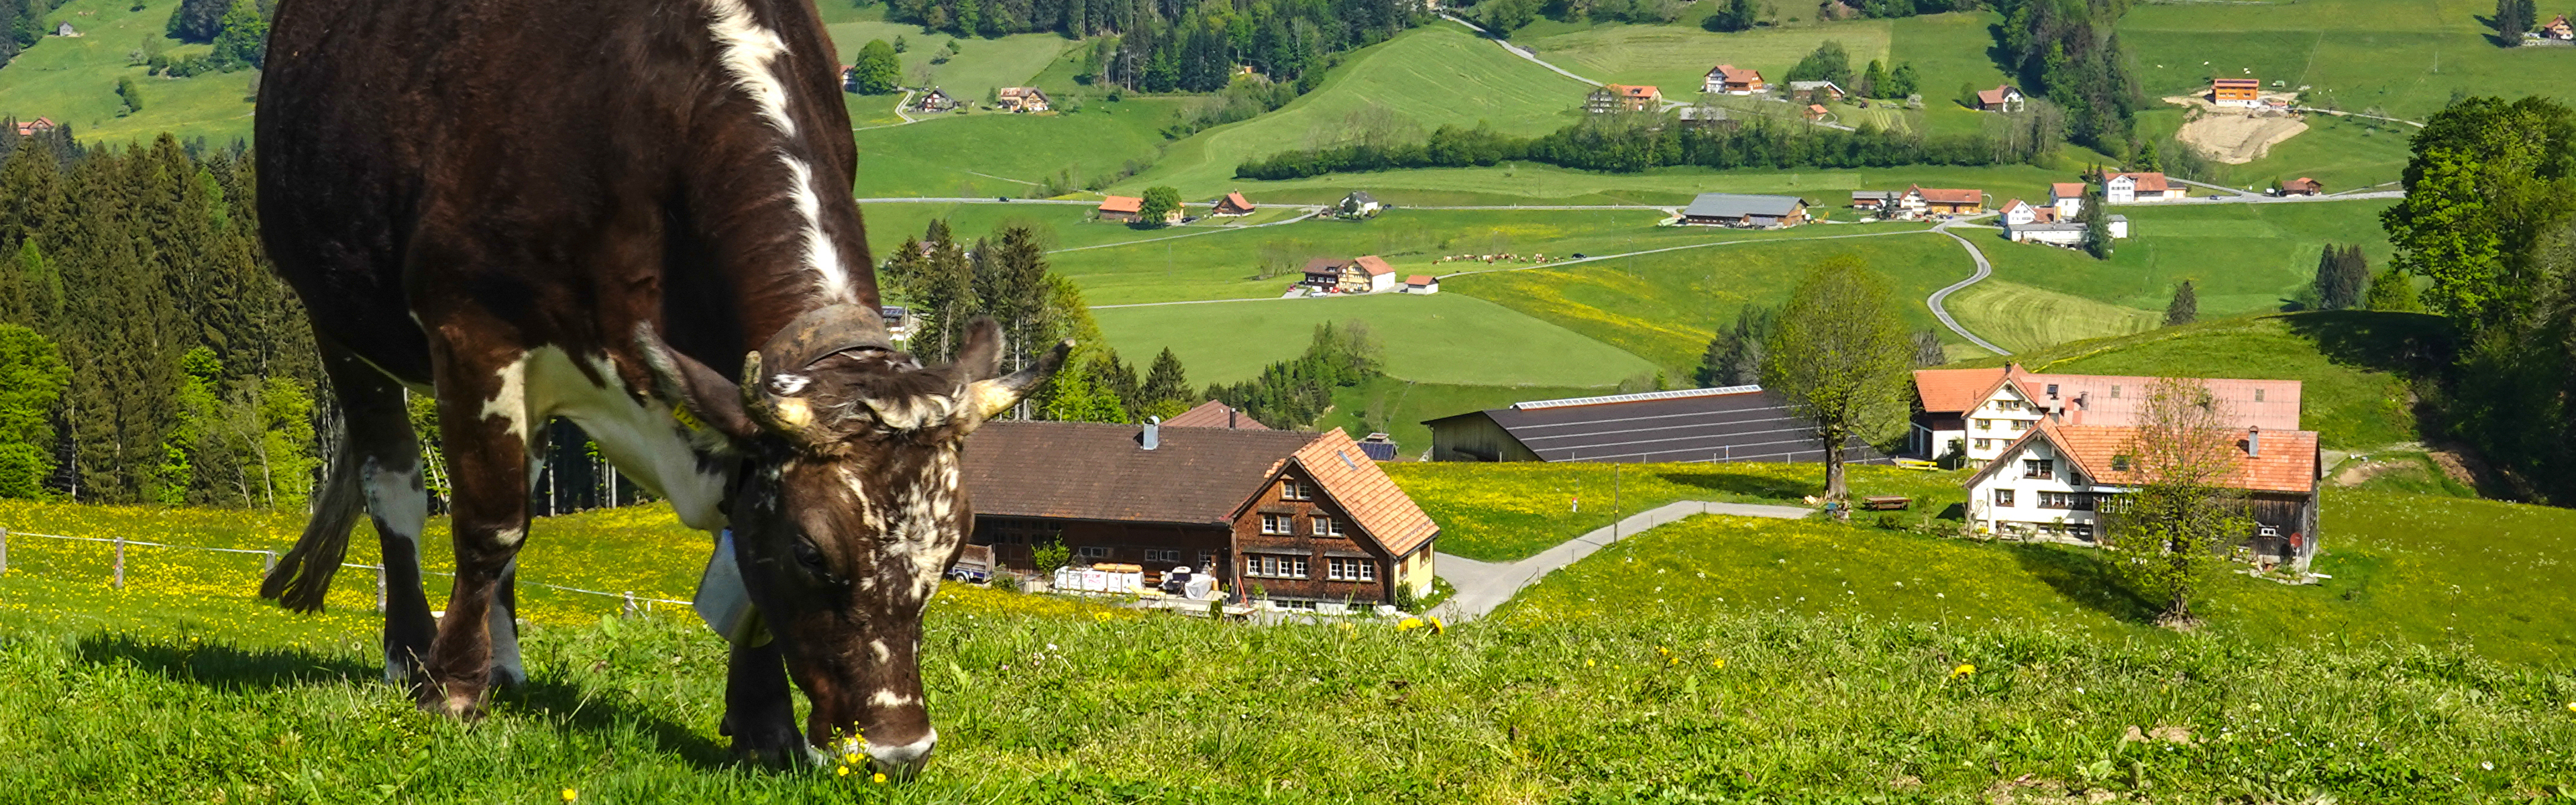 Grasende Kuh vor der malerischen Appenzellerlandschaft